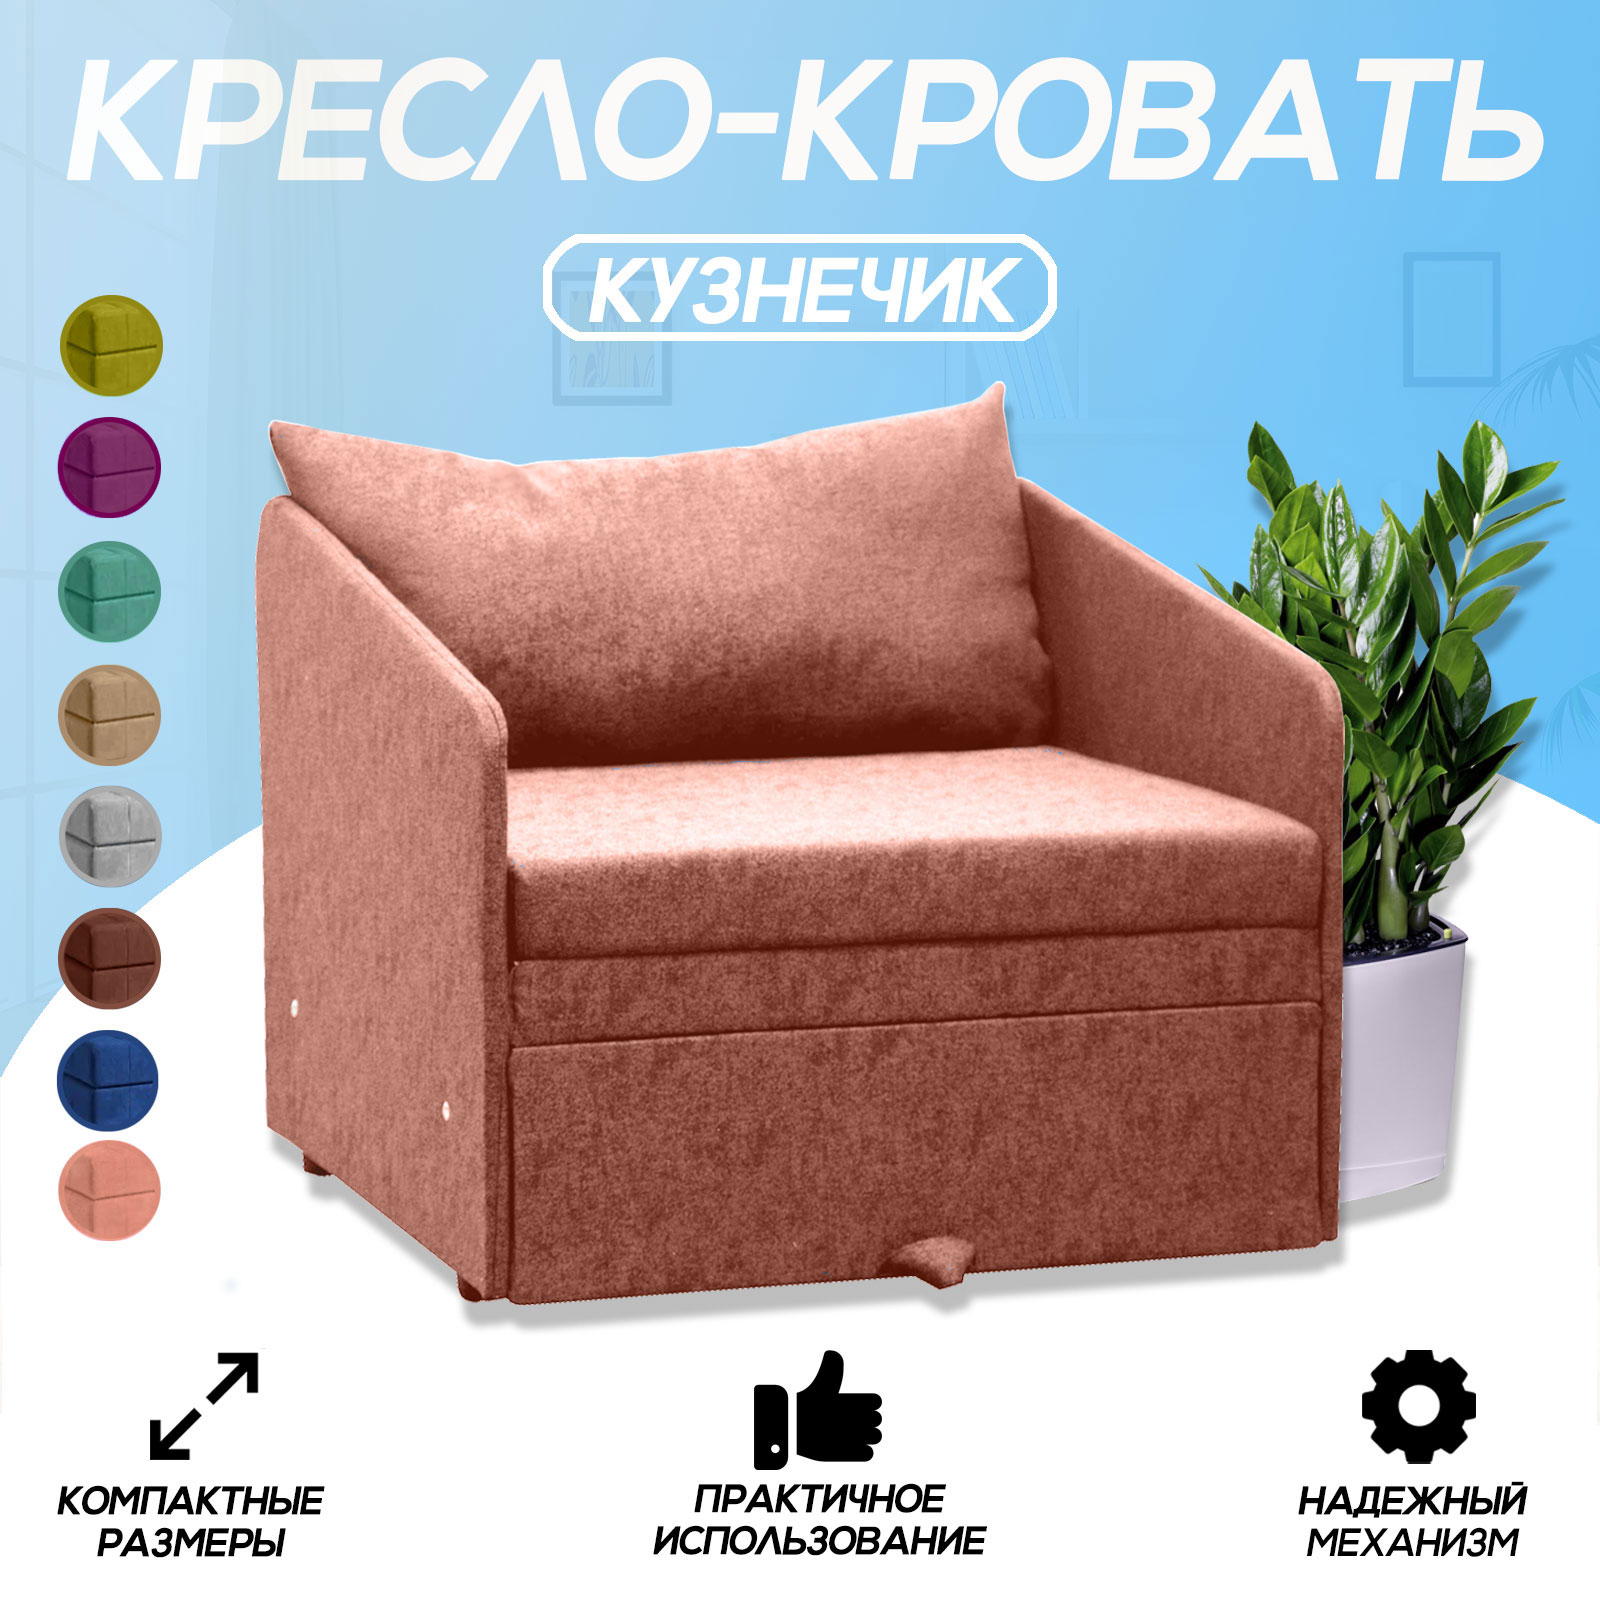 Кресло-кровать Центр Мебель Кузнечик, розовое - купить в Москве, цены на Мегамаркет | 600013551314